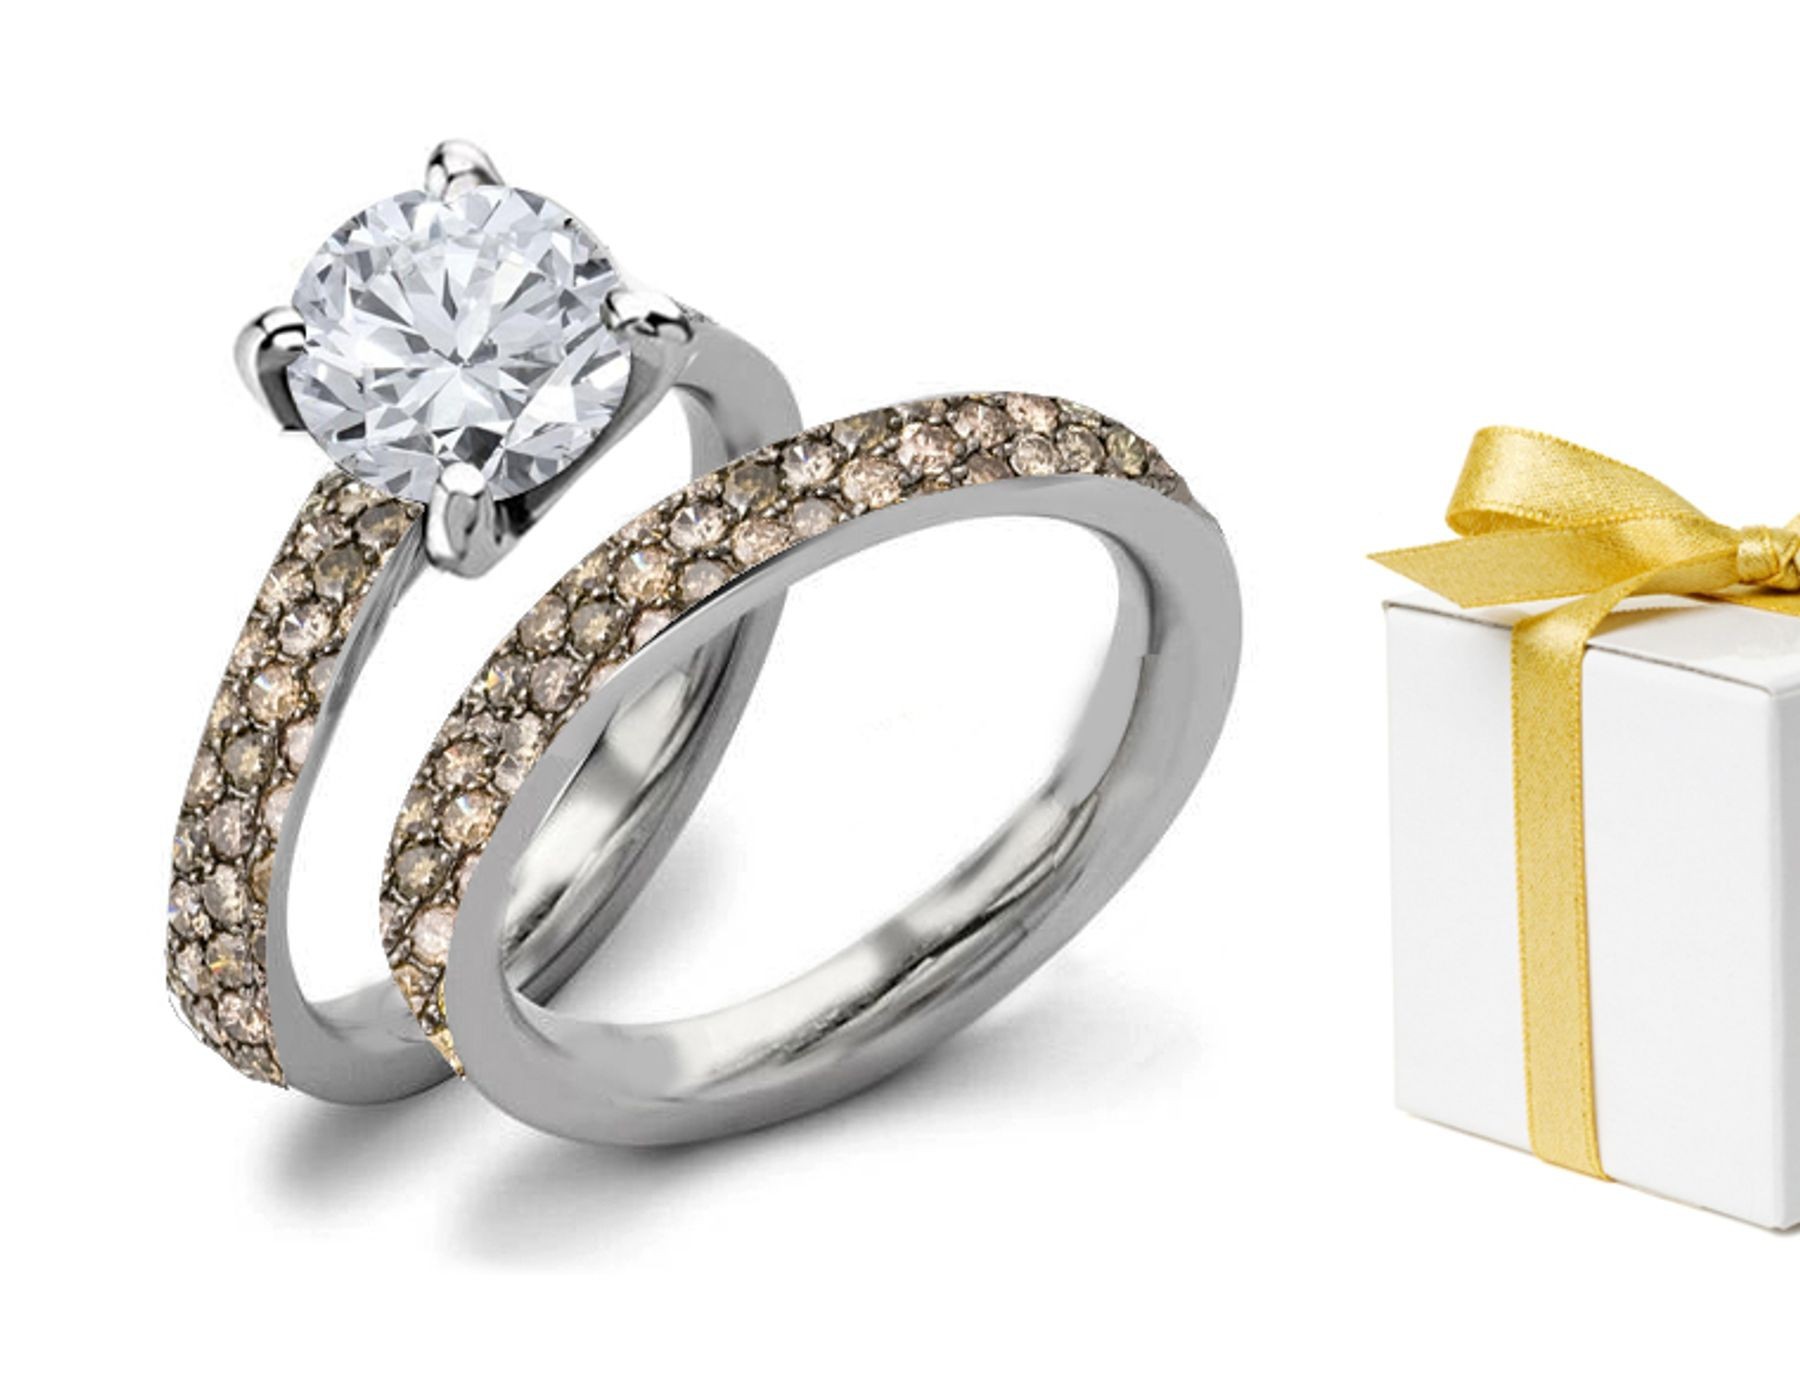 Brown Diamonds Engagement & Wedding Rings Set